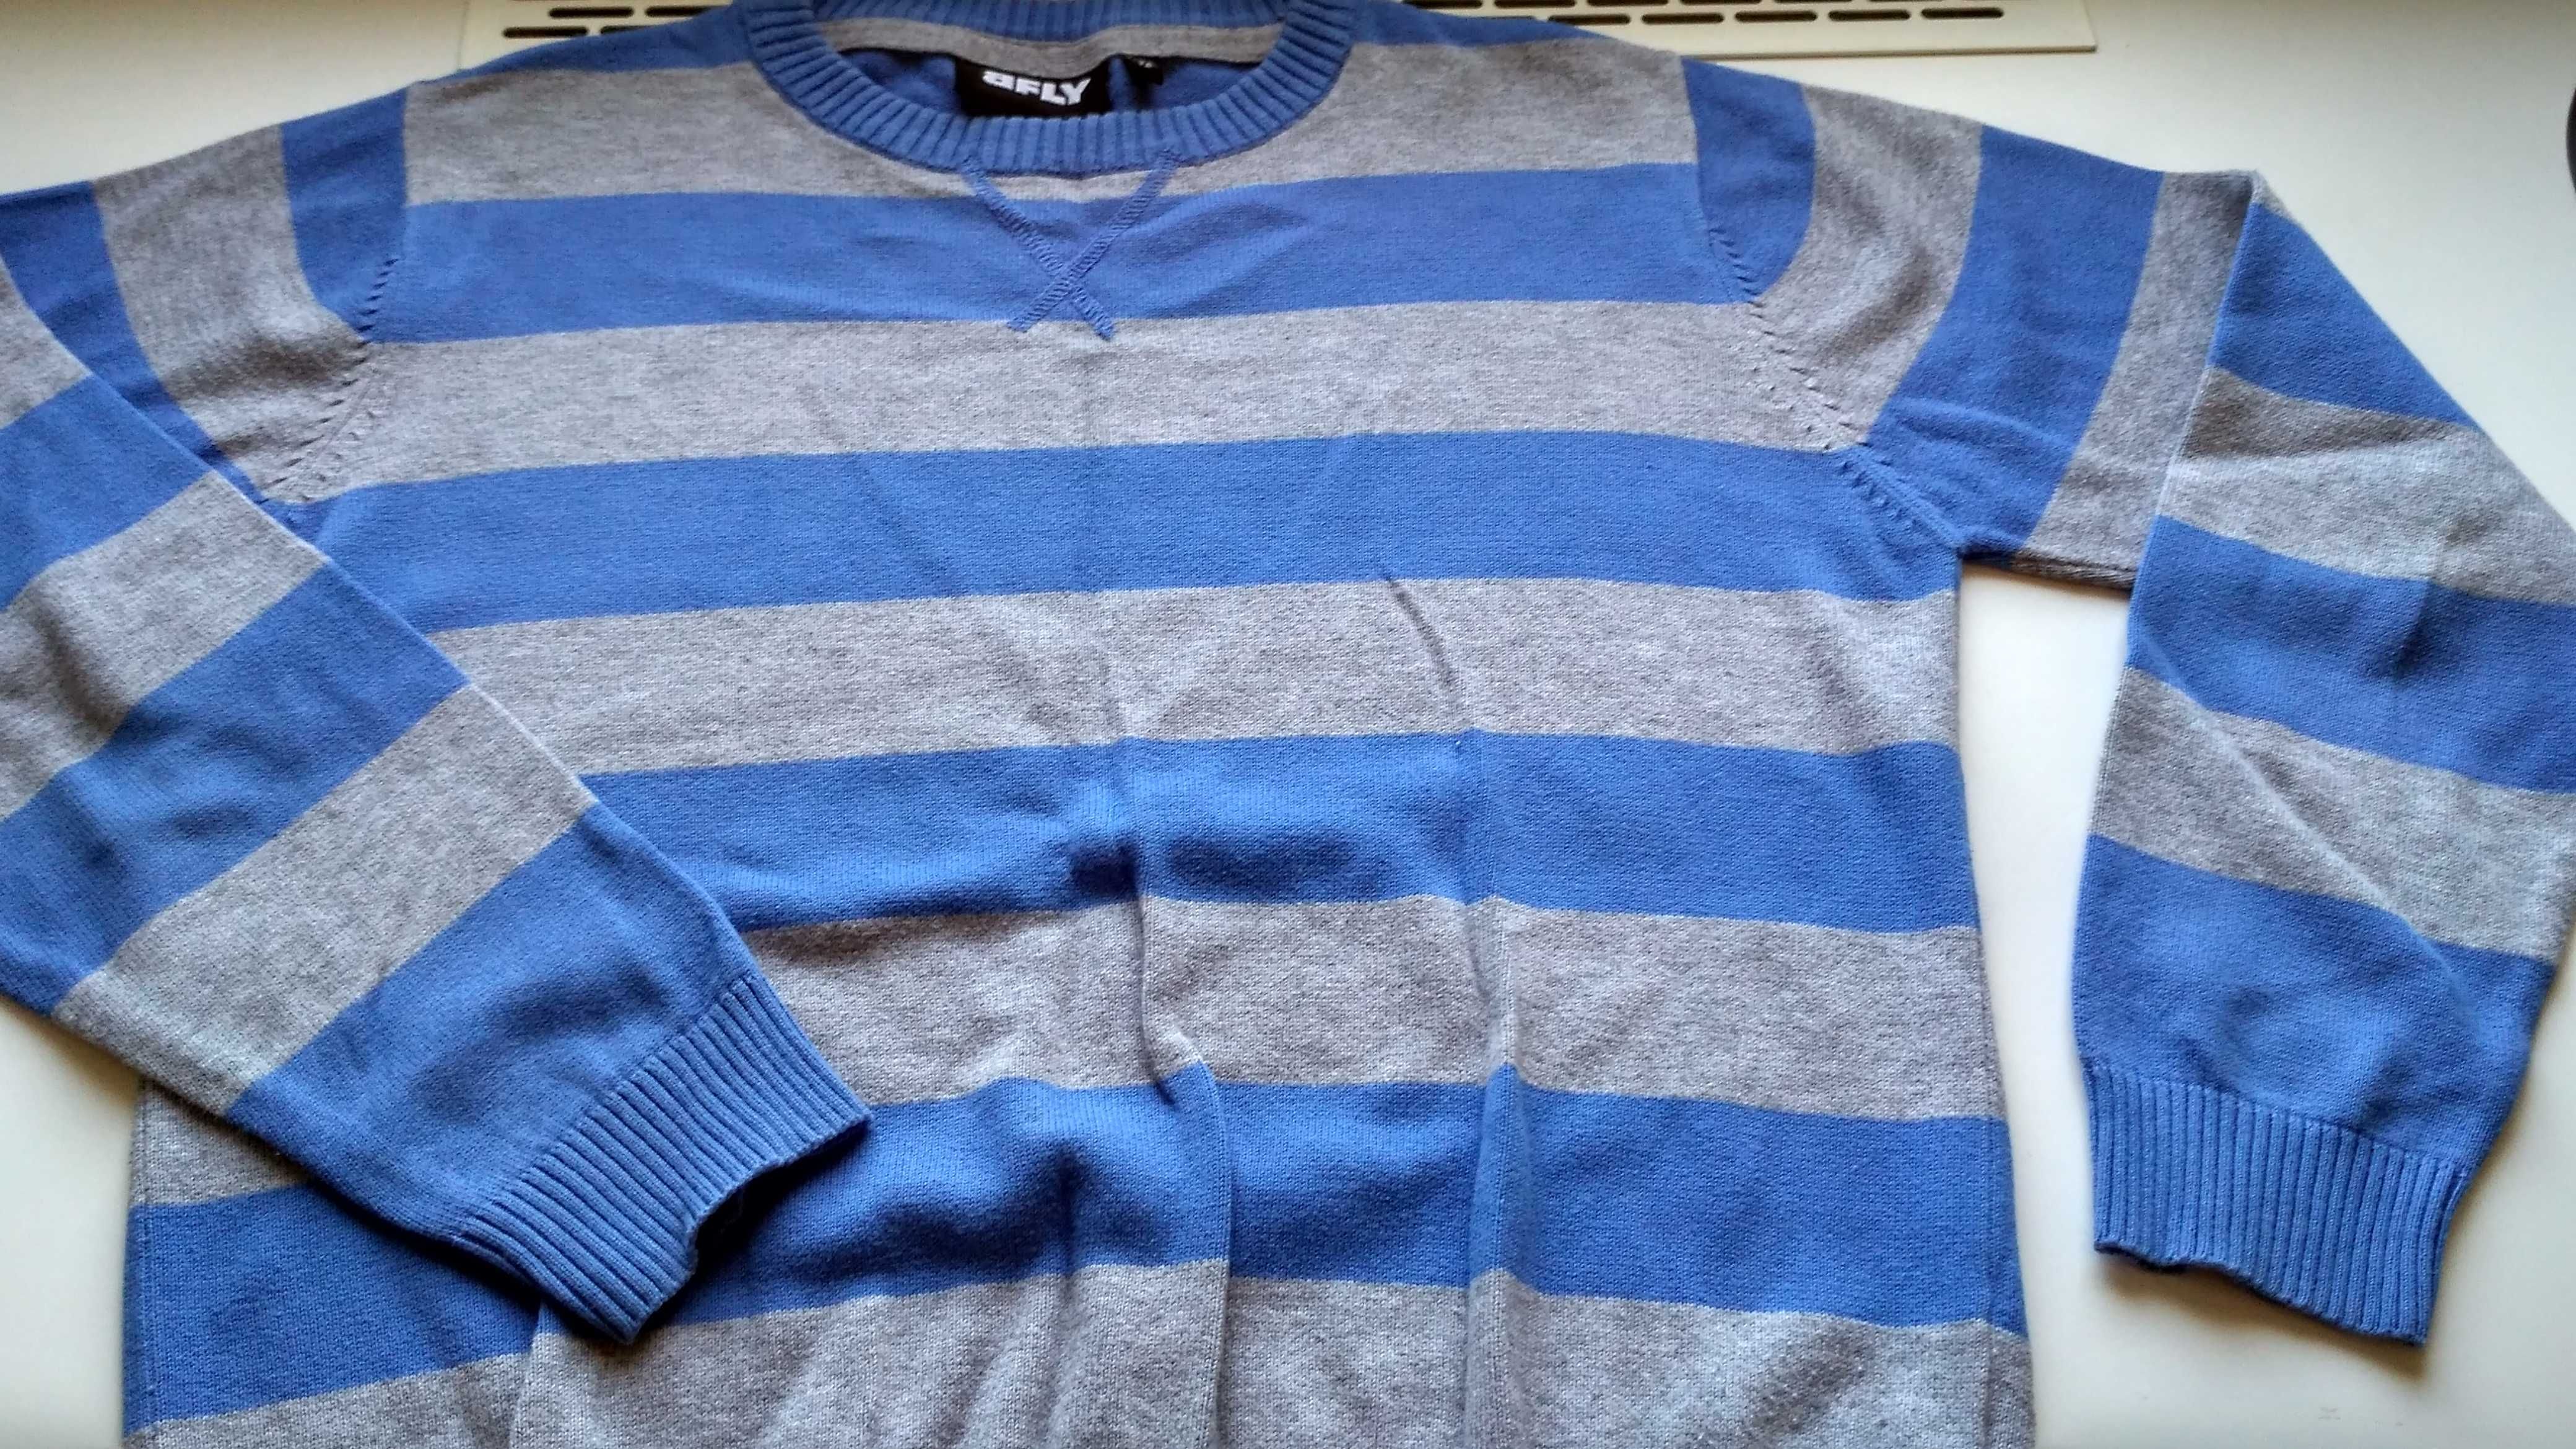 Markowy  sweter   100% bawełna  wysoka jakość r. 152